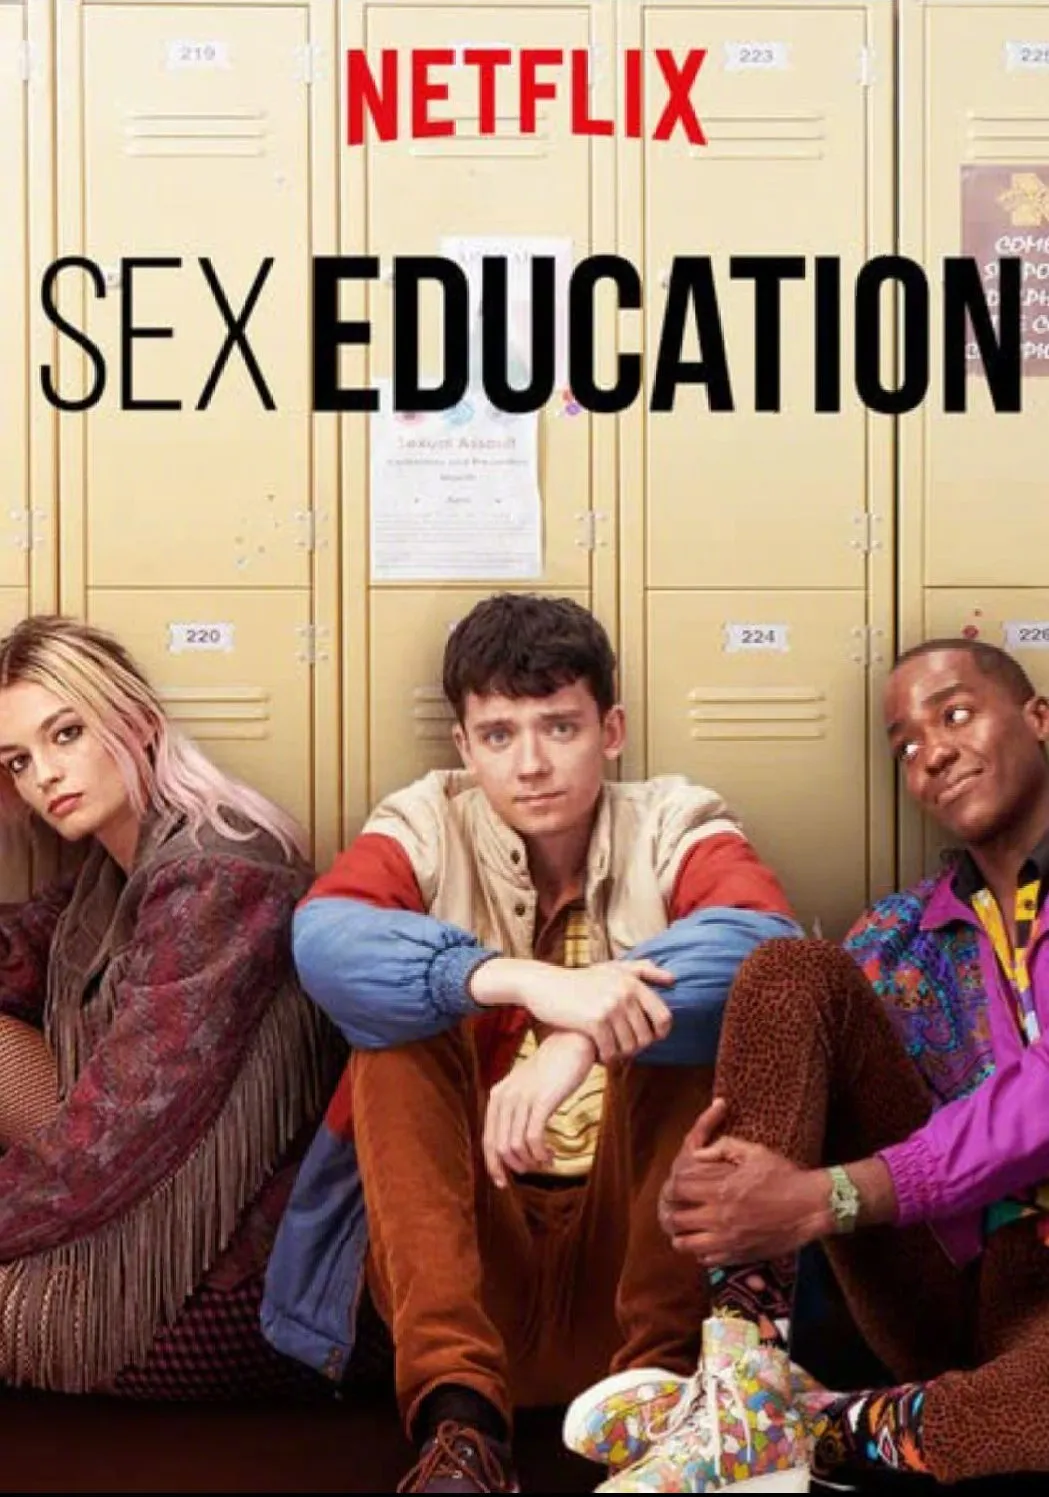 Netflix hit 'Sex Education Season 4' begins filming, Asa Butterfield shares set photos | FMV6